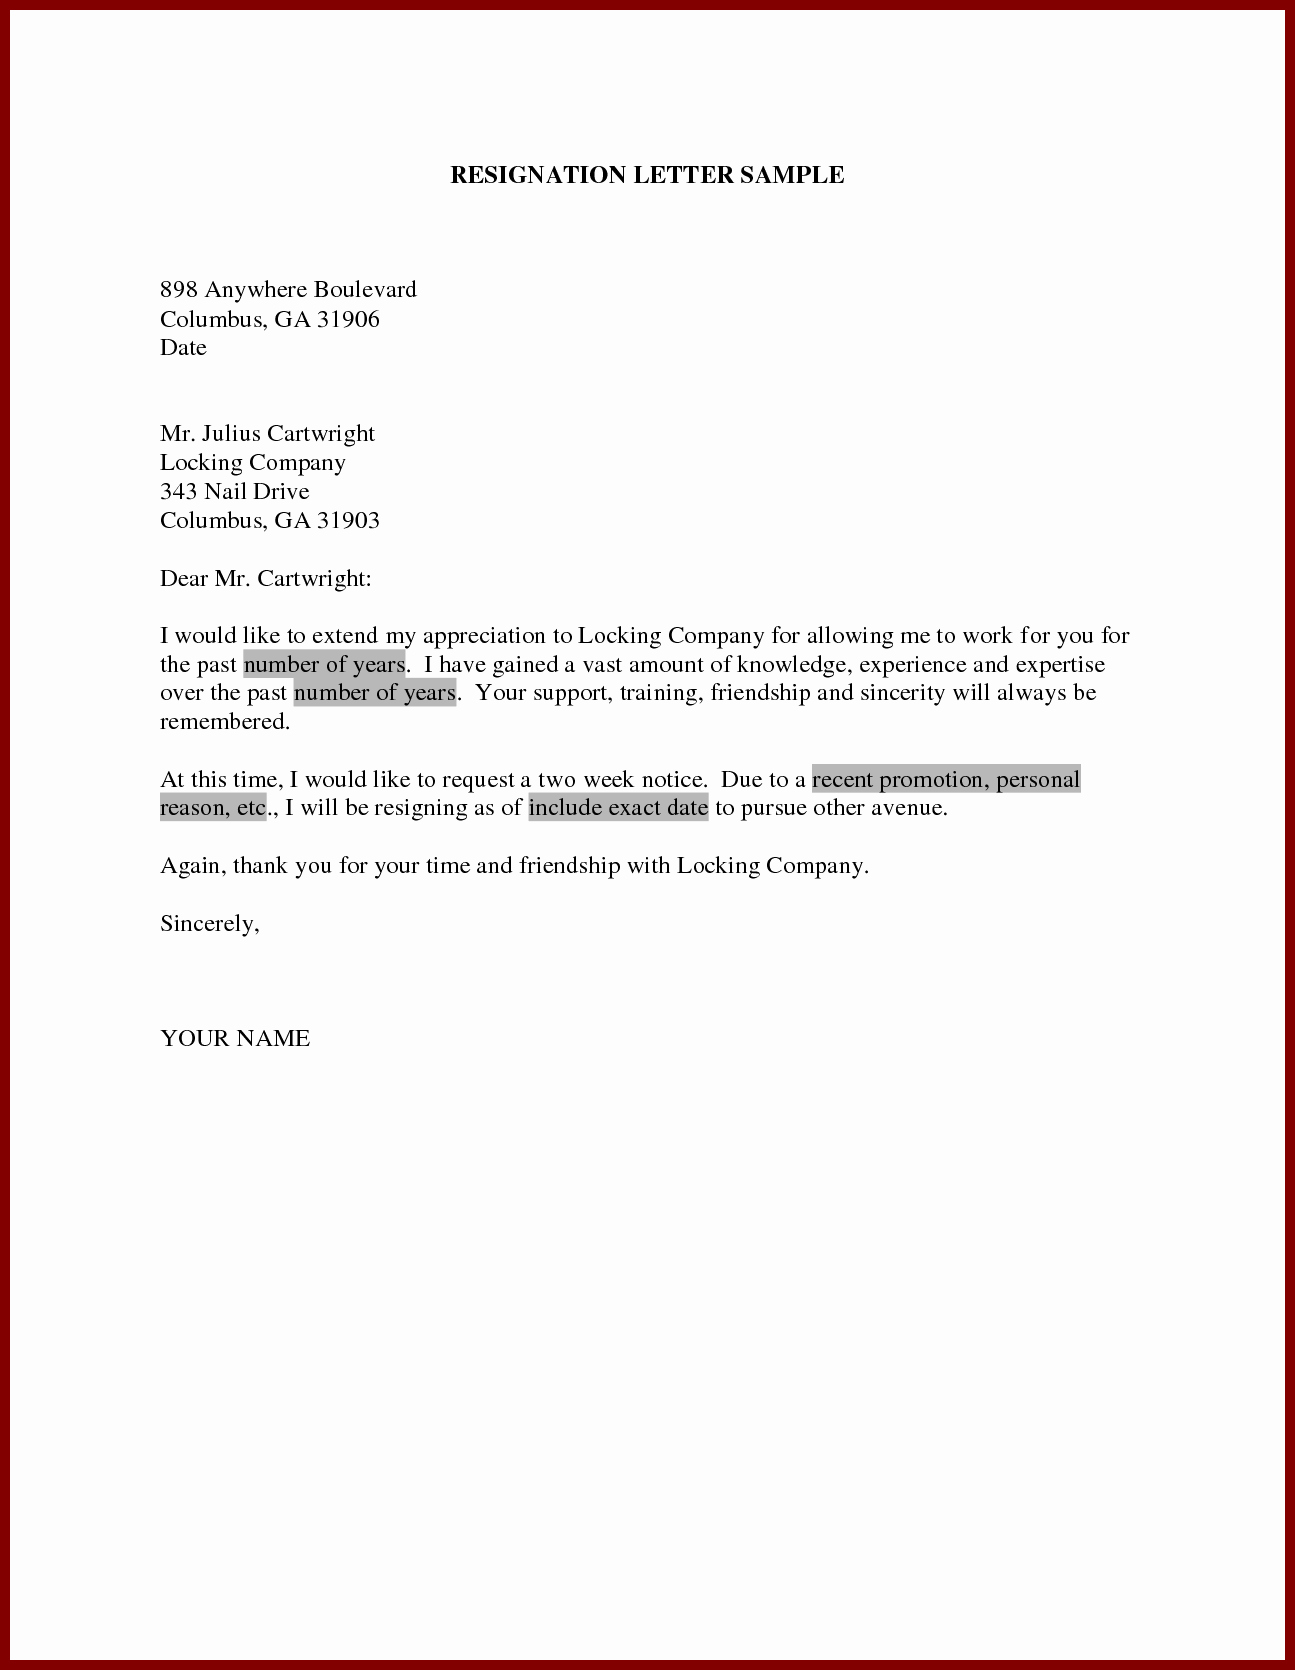 Resignation Letter for Family Reason Luxury Resignation Letter Sample Home Decor